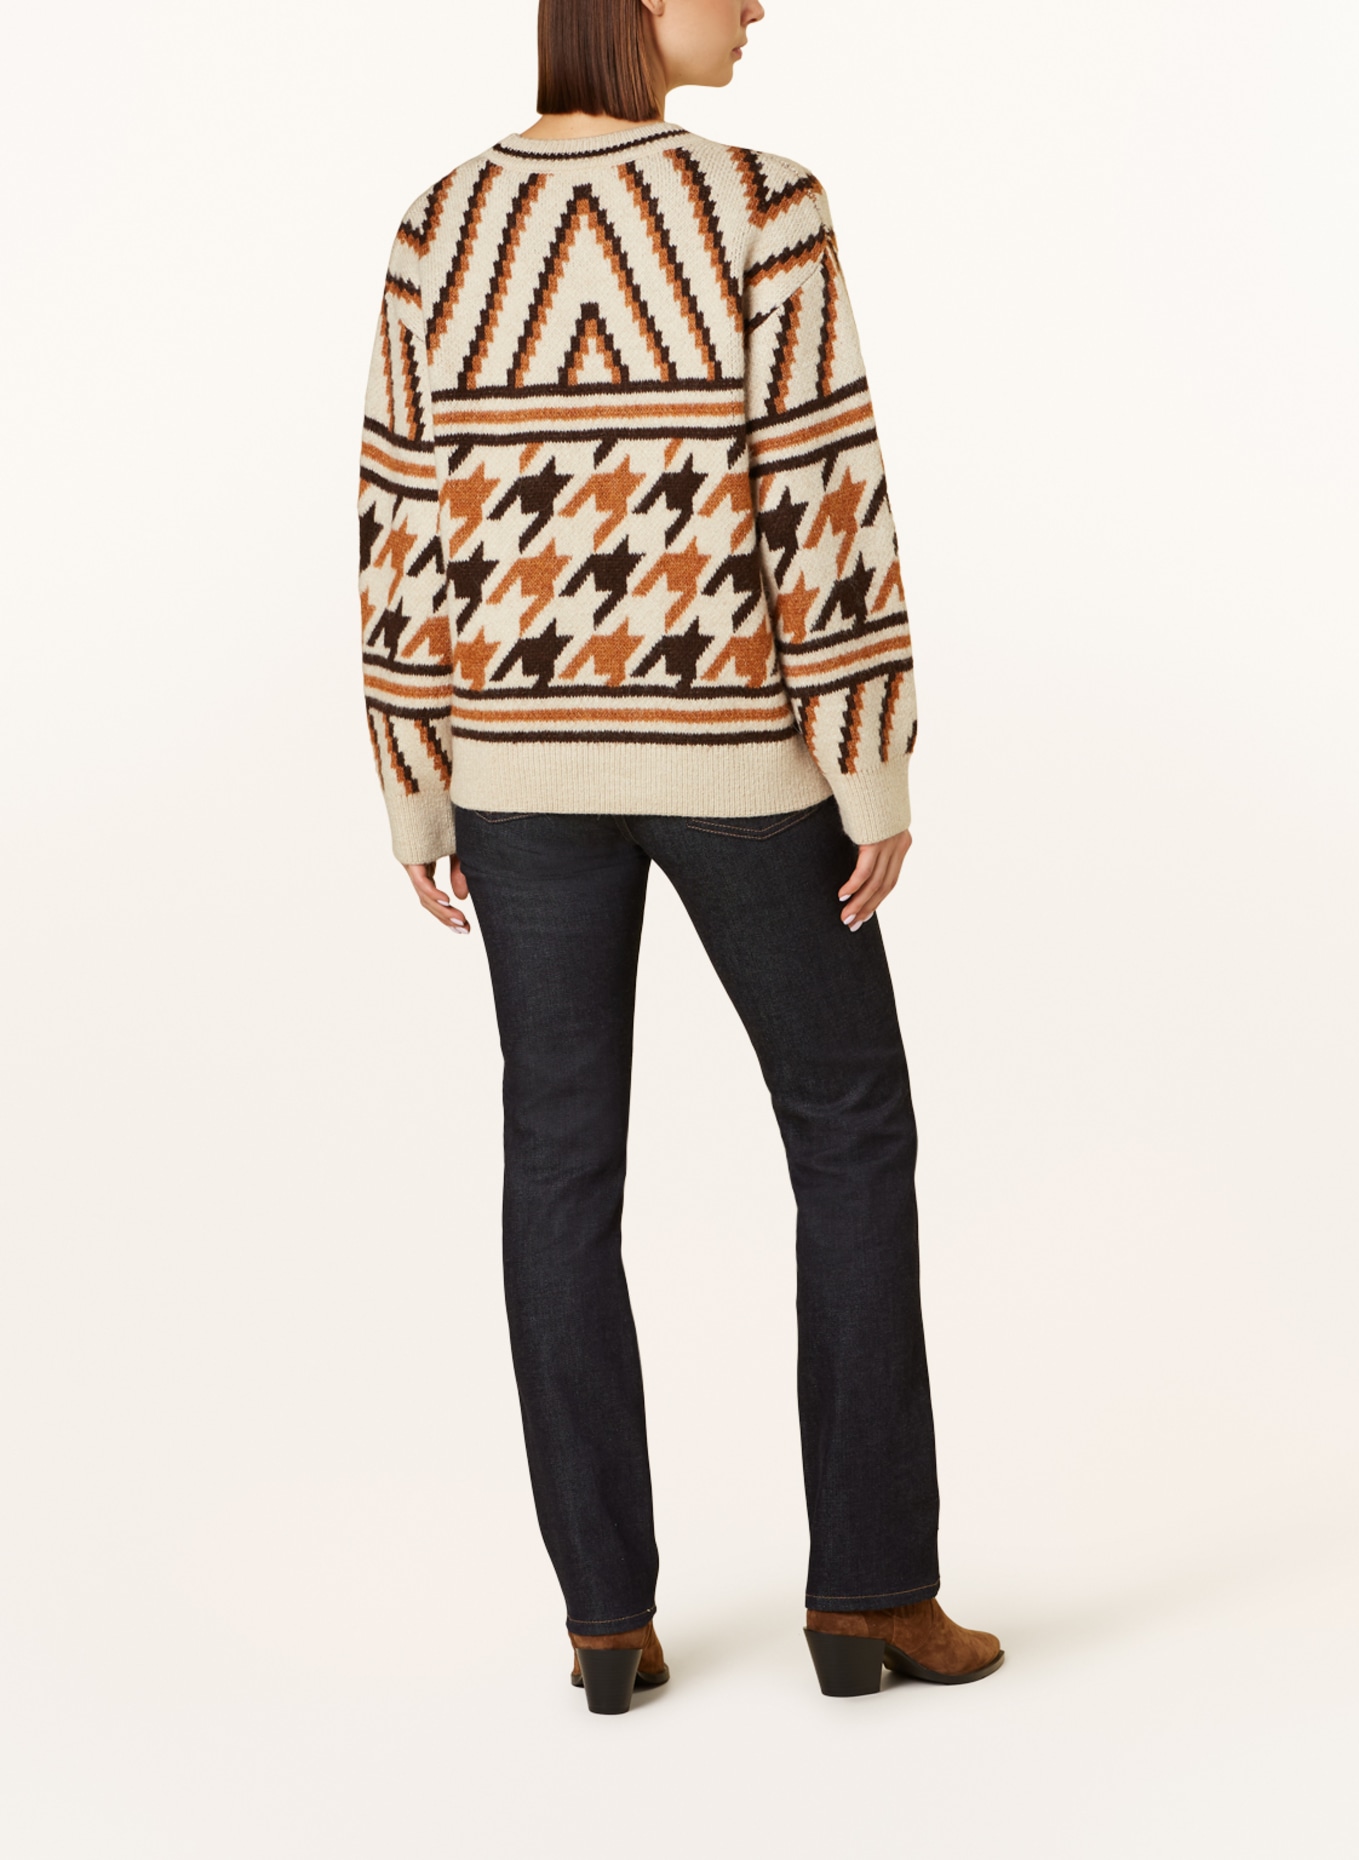 Pepe Jeans Sweater DEANNA in ecru/ cognac/ dark brown